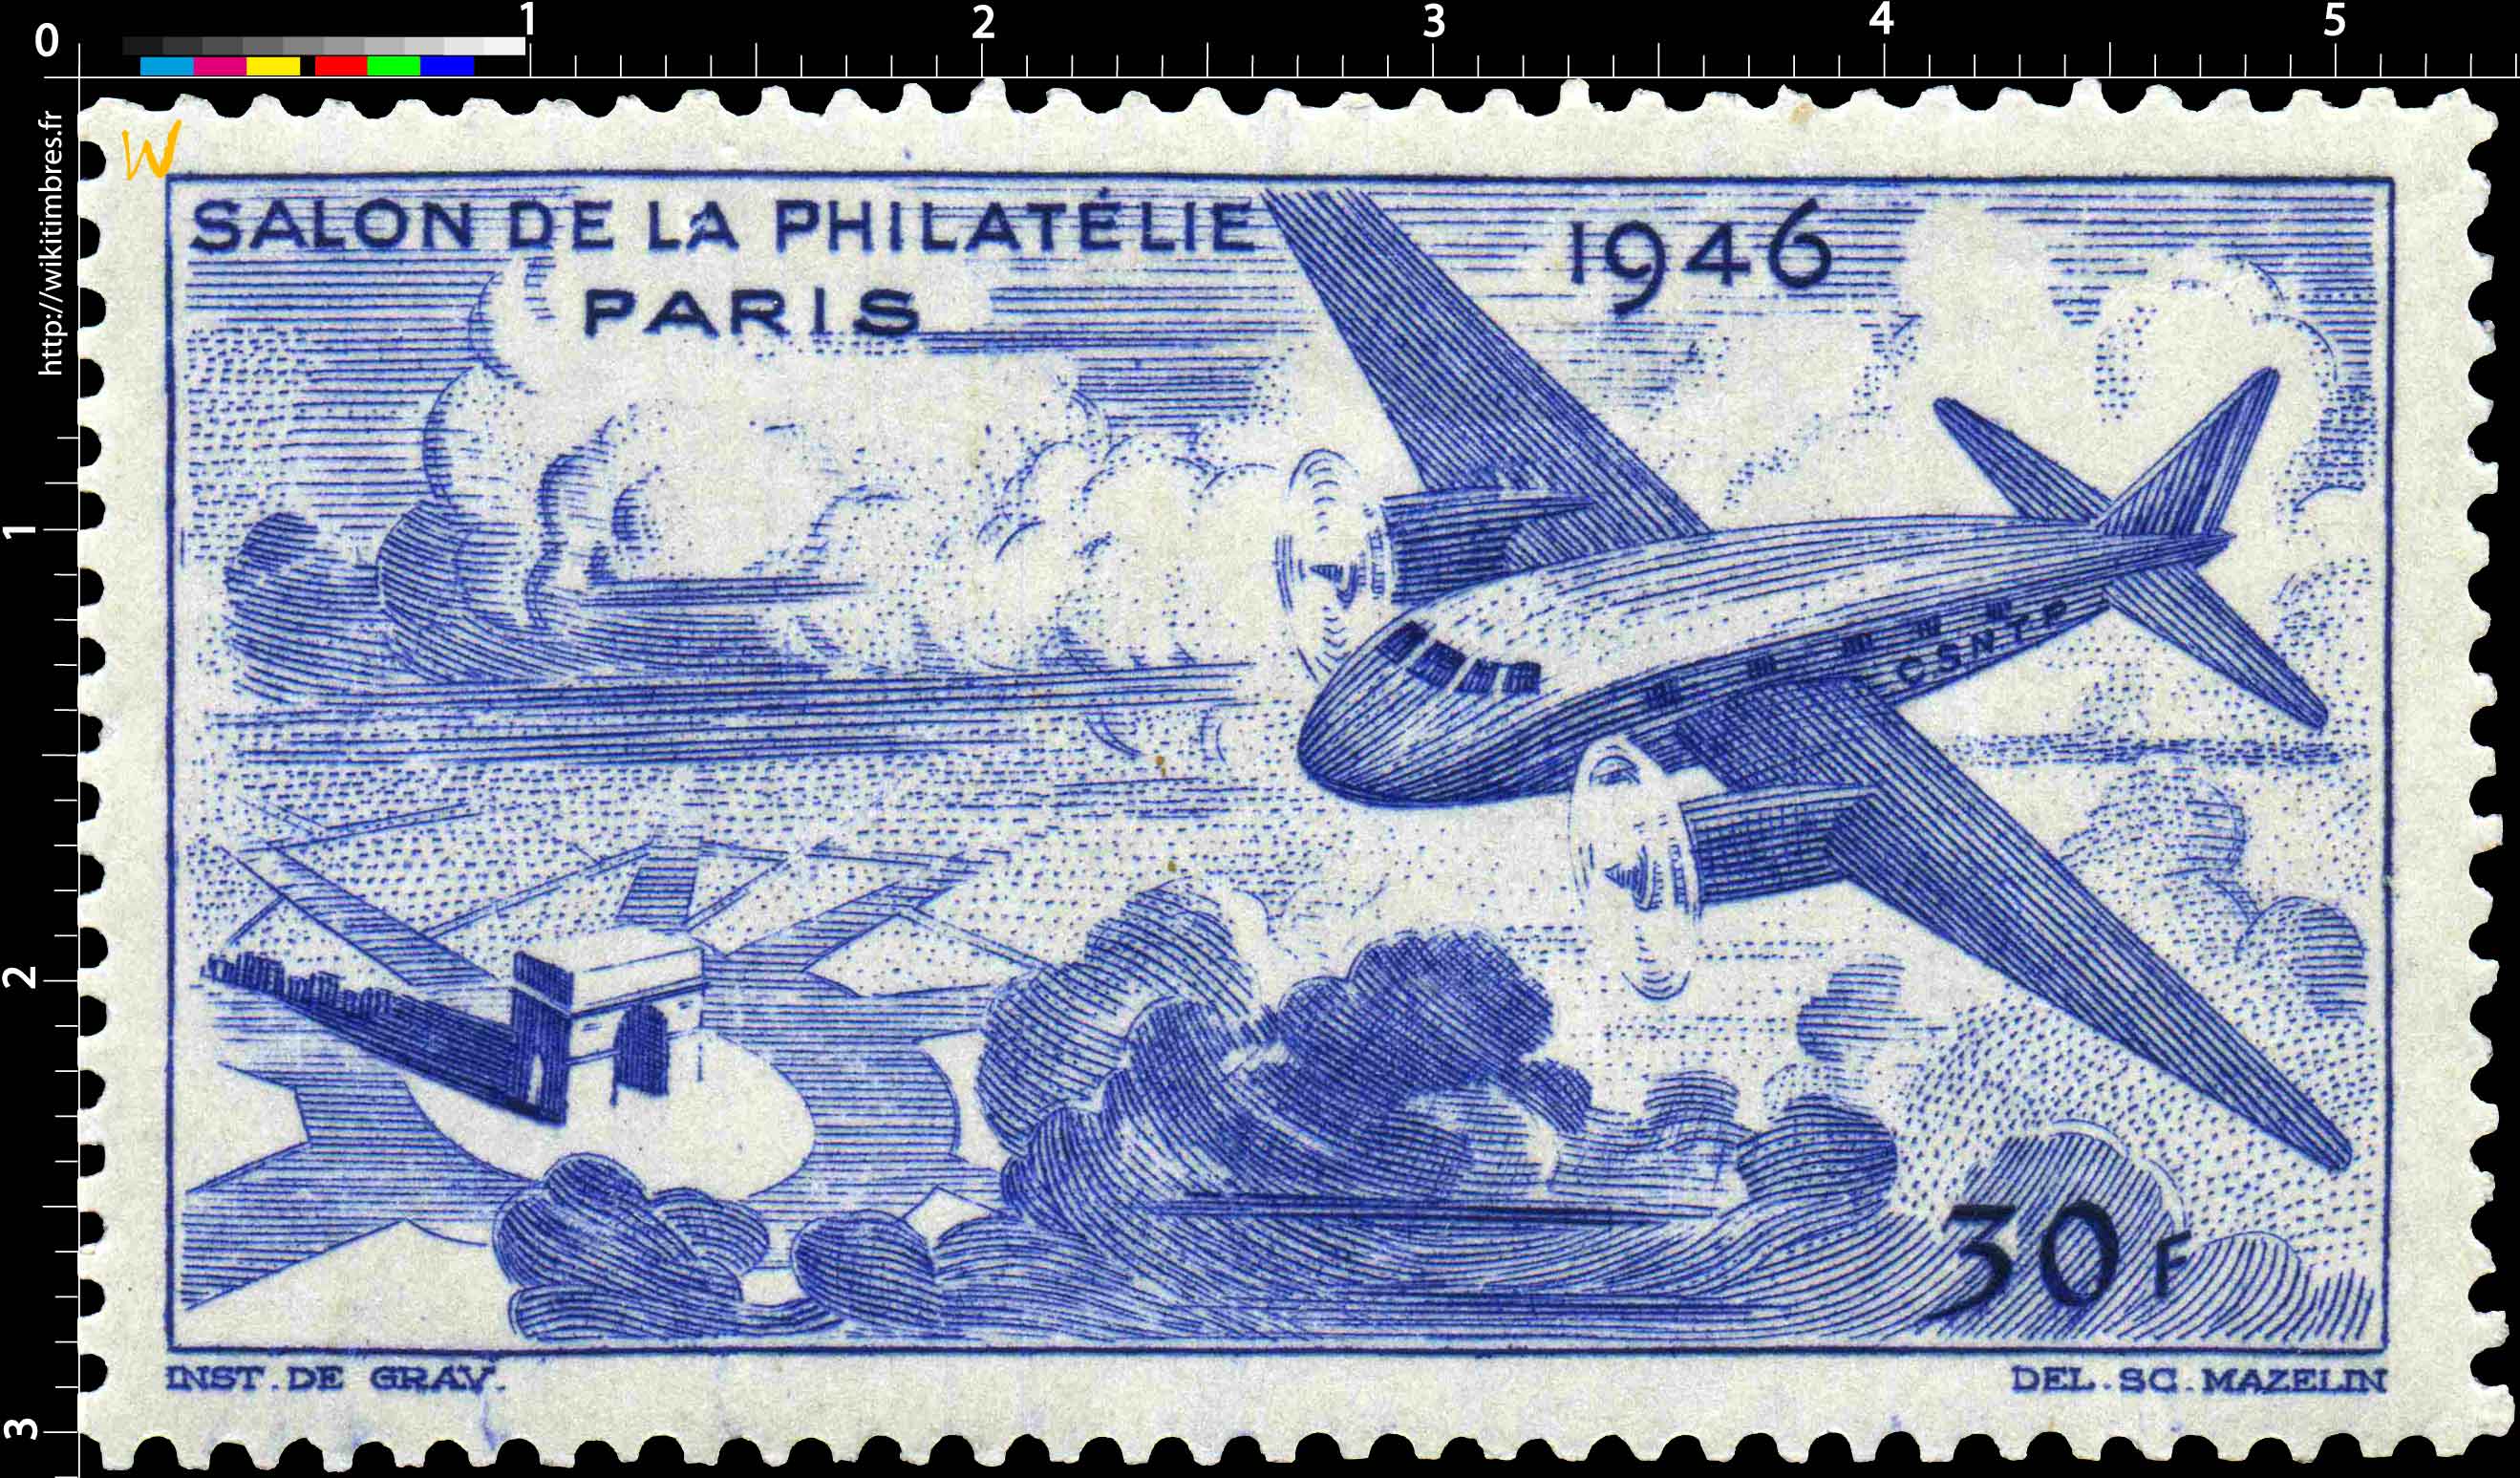 1946 Salon de la philatélie Paris